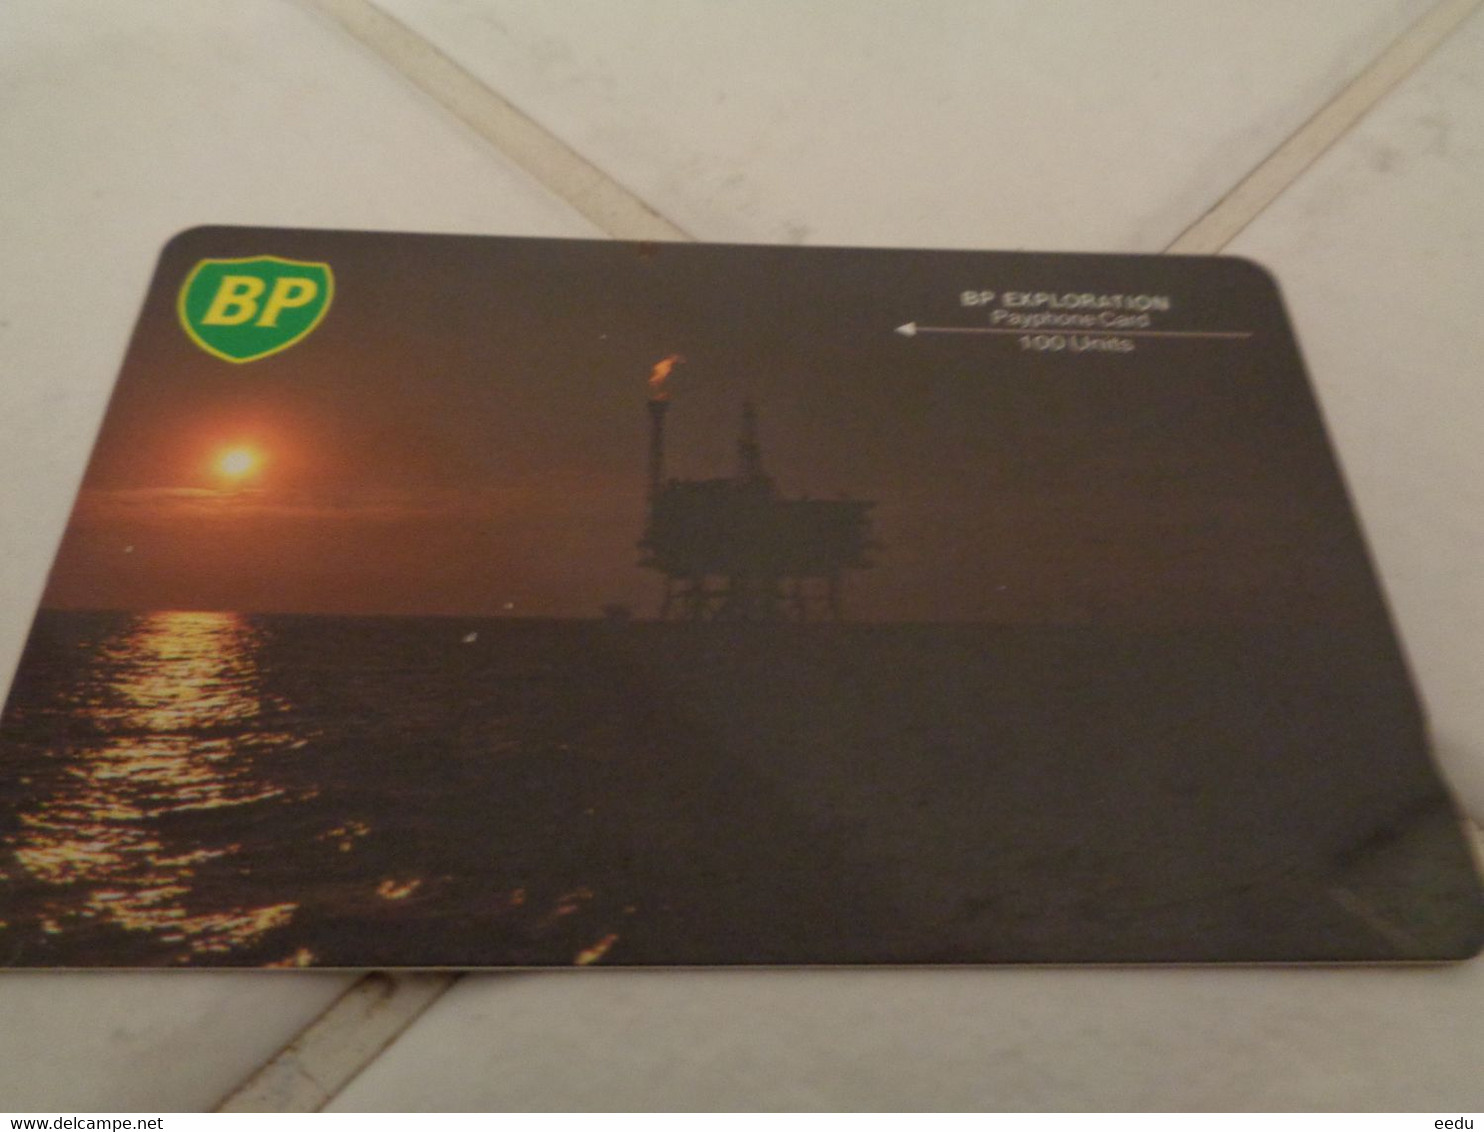 UK Phonecard - [ 2] Oil Drilling Rig